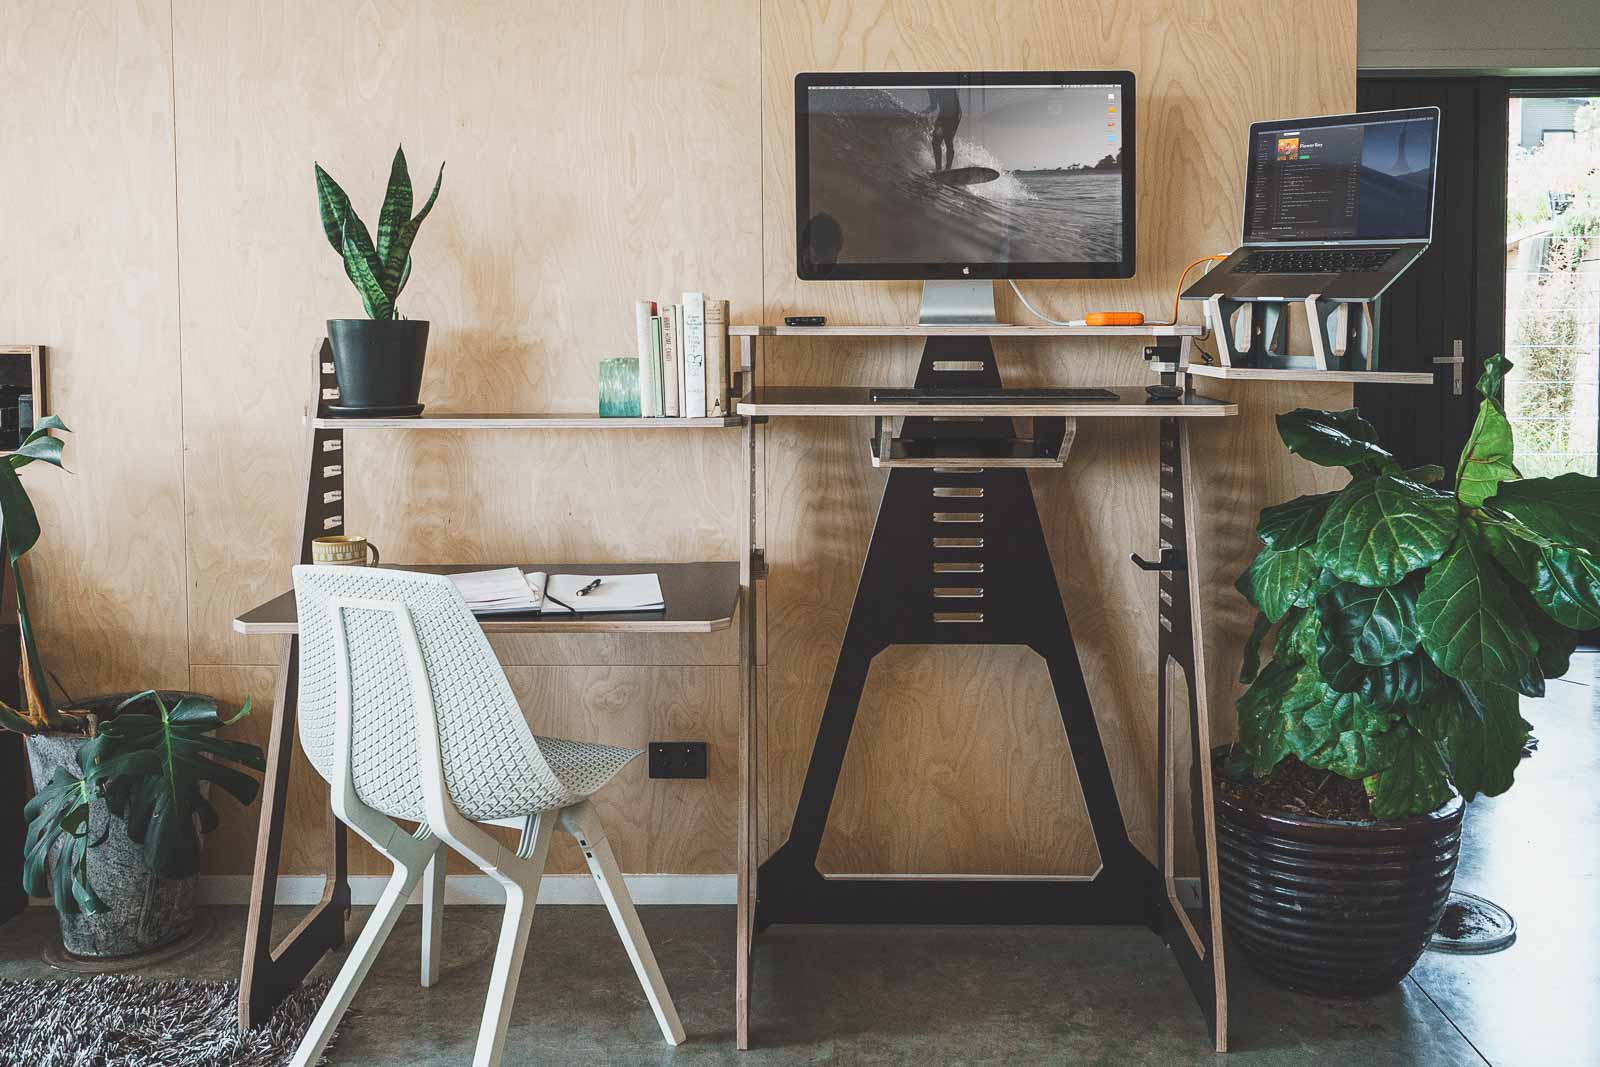 https://cdn.shopify.com/s/files/1/0374/7155/1628/t/8/assets/-standing-desk--small-desk--ergonomic-desk--modular-desk--sustainable-desk--working-desk--work-from-home-desks3-1633654768282.jpg?v=1633654773